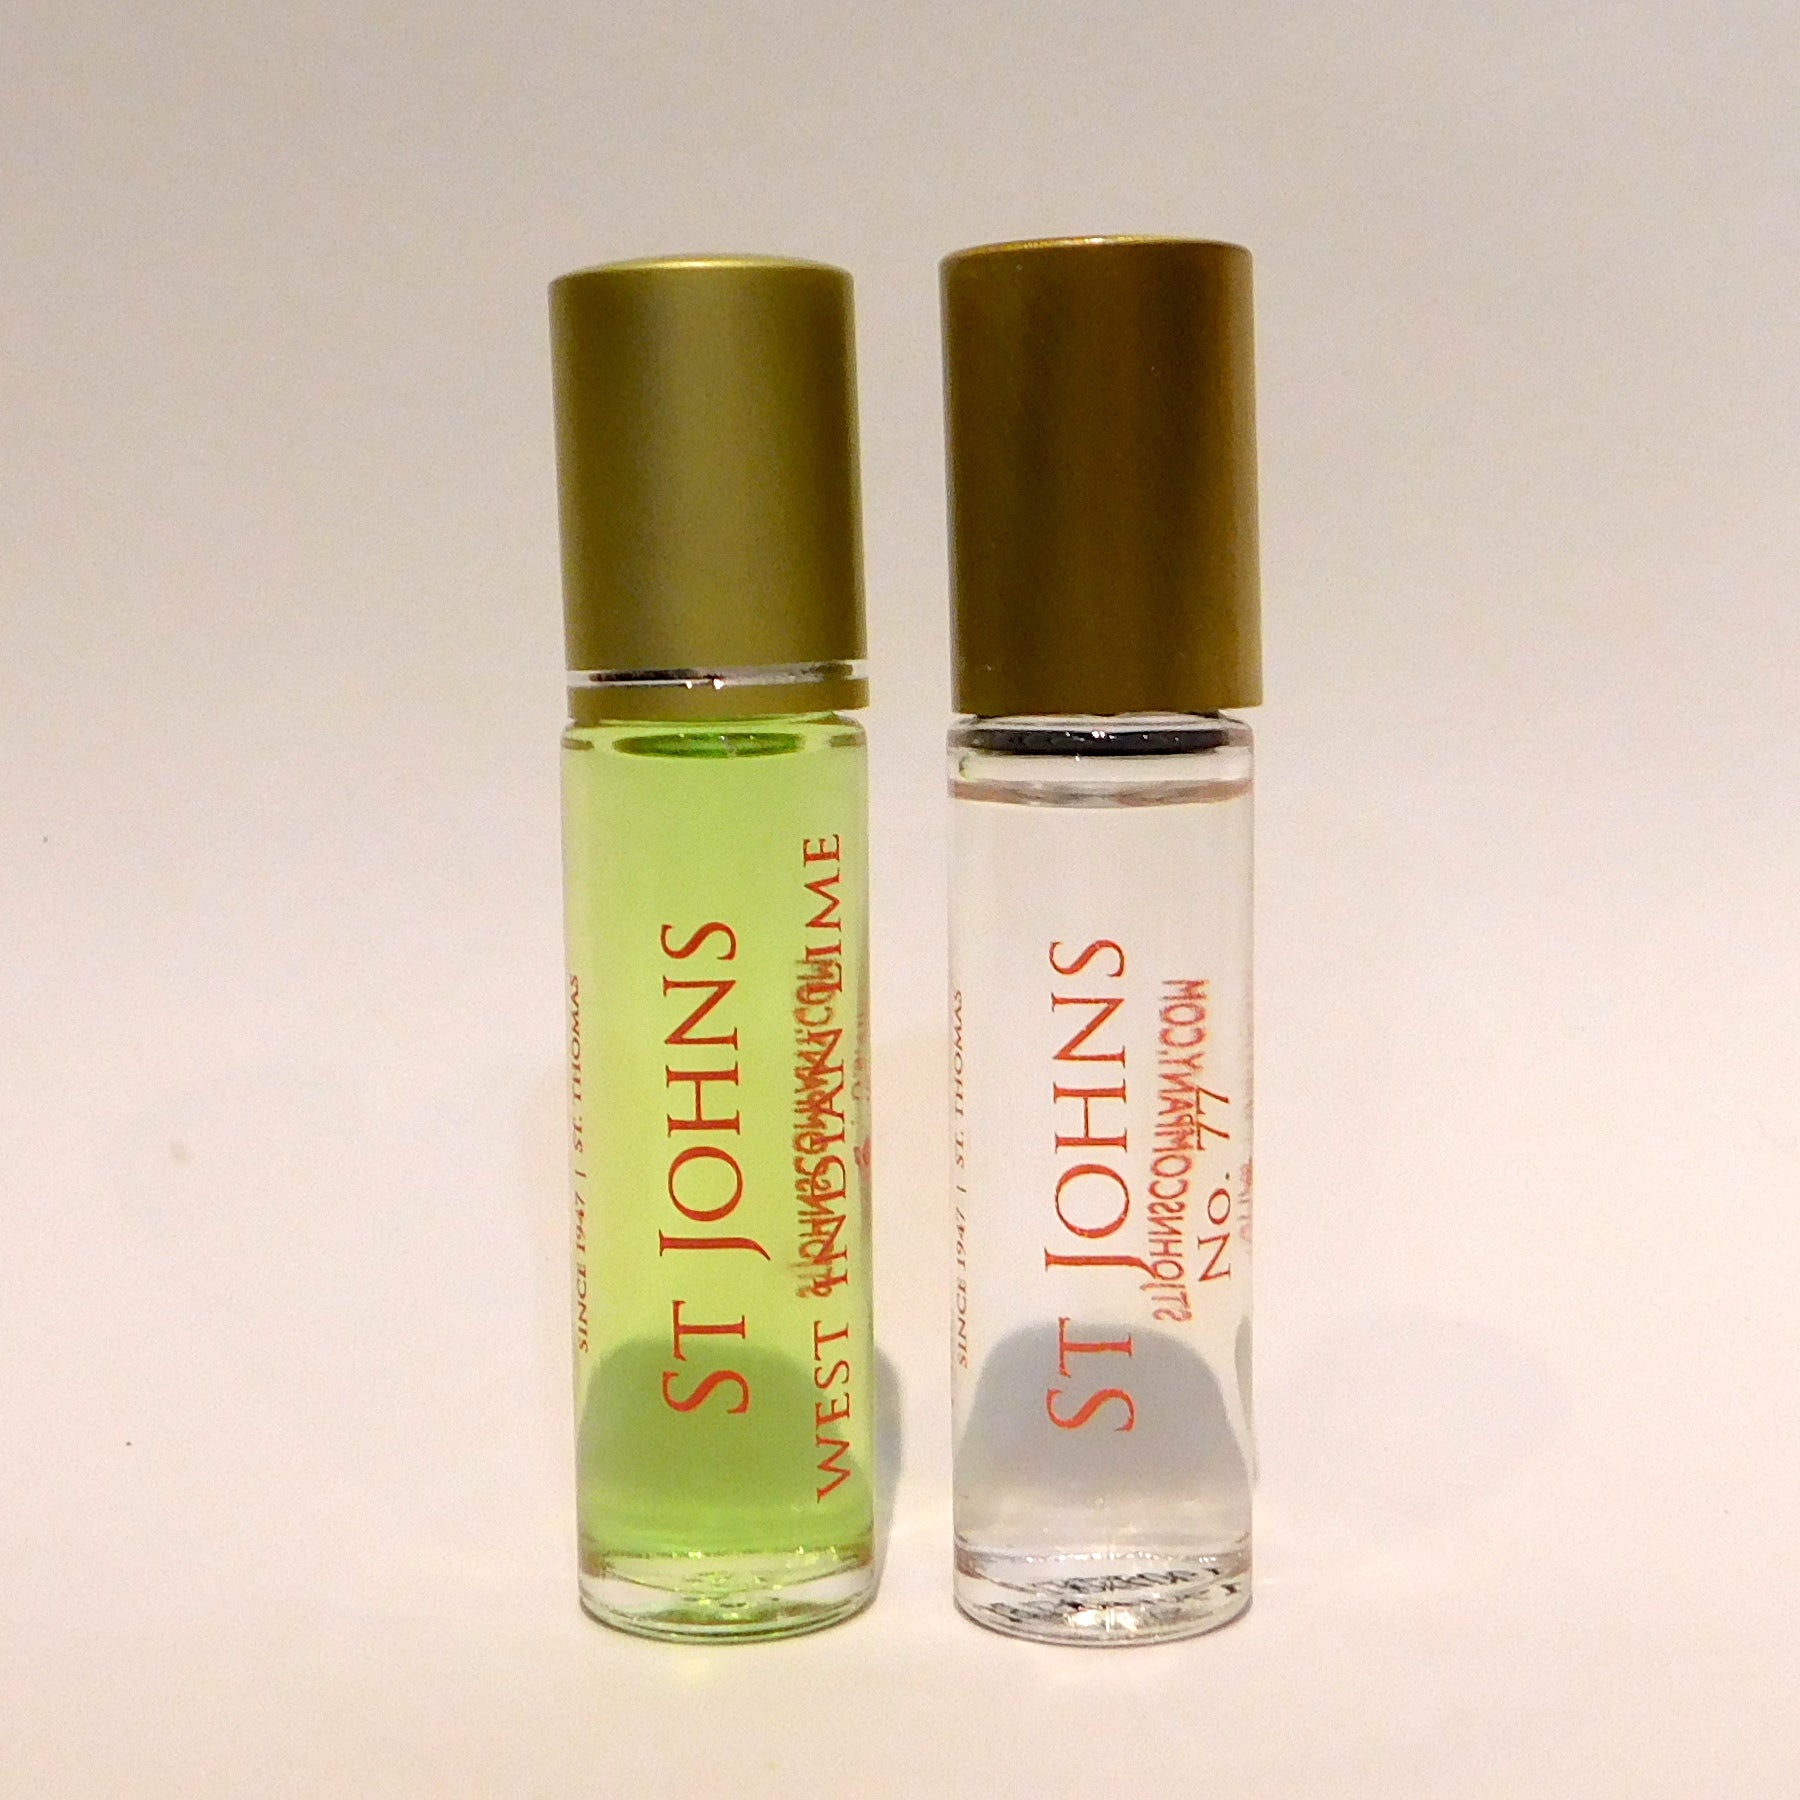 West Indian Bay Spray Fragrances 10 ml.